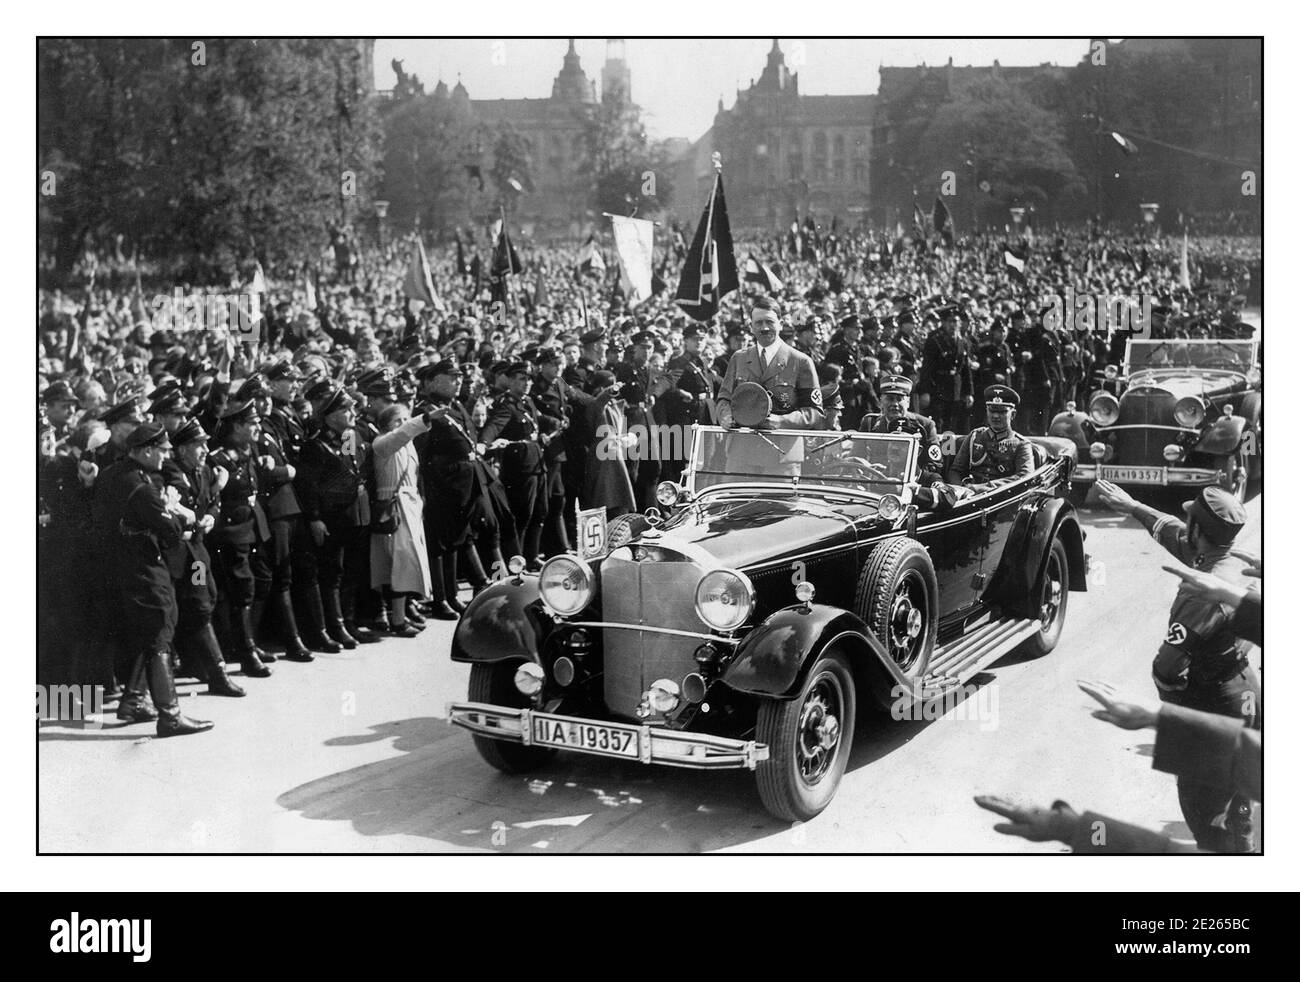 Vintage Adolf Hitler Nazi Führer Deutsche Führer Parade mit Autokolonne In offenen Mercedes-Motorwagen mit ekstatischen Massen winken Hakenkreuz Fahnen und grüssen Heil Hitler zu ihm und seiner Autokolonne Parade 1940er Jahre Deutschland Stockfoto